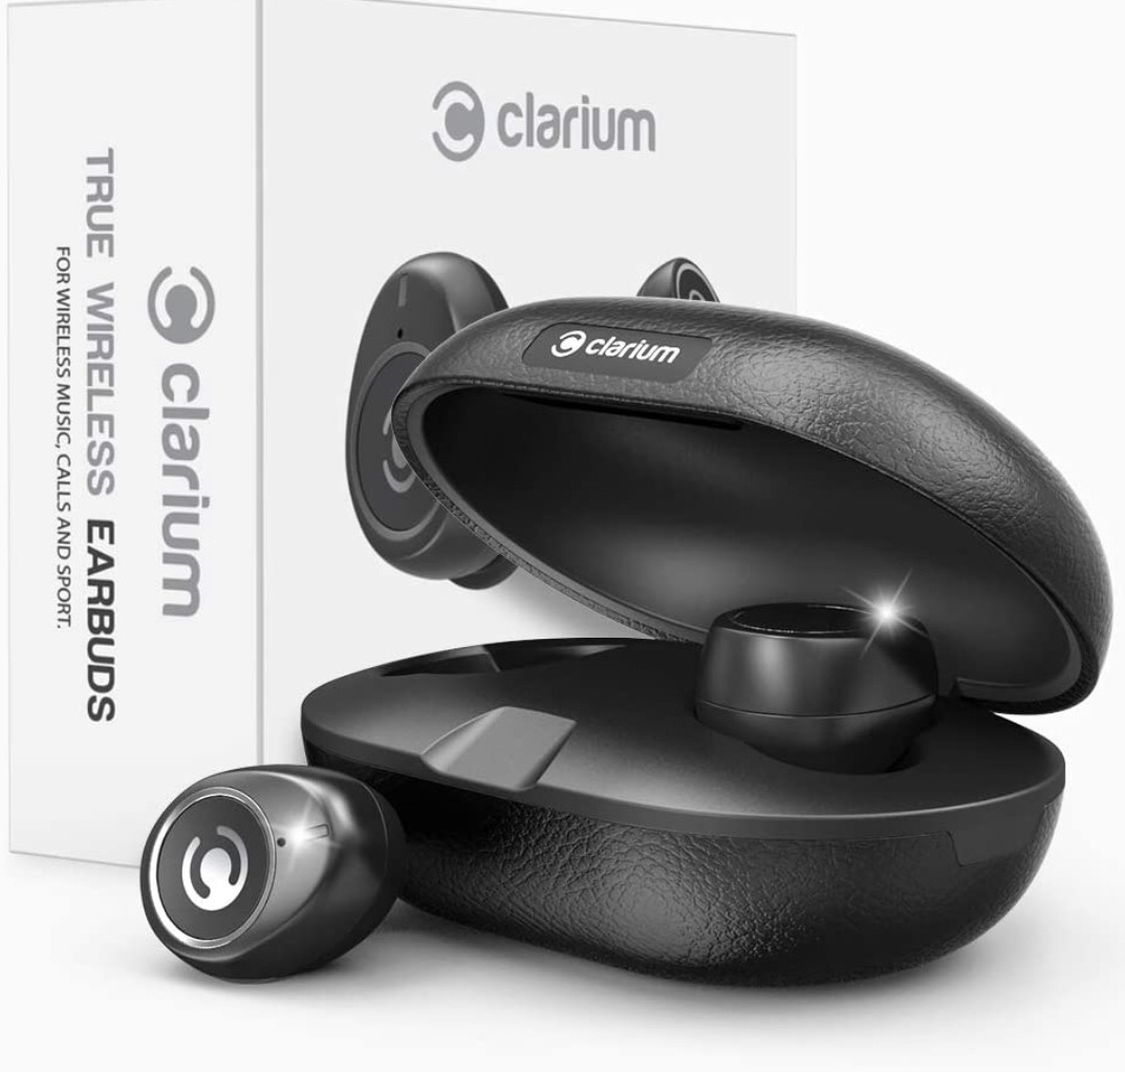 Clarium True Wireless Earbuds